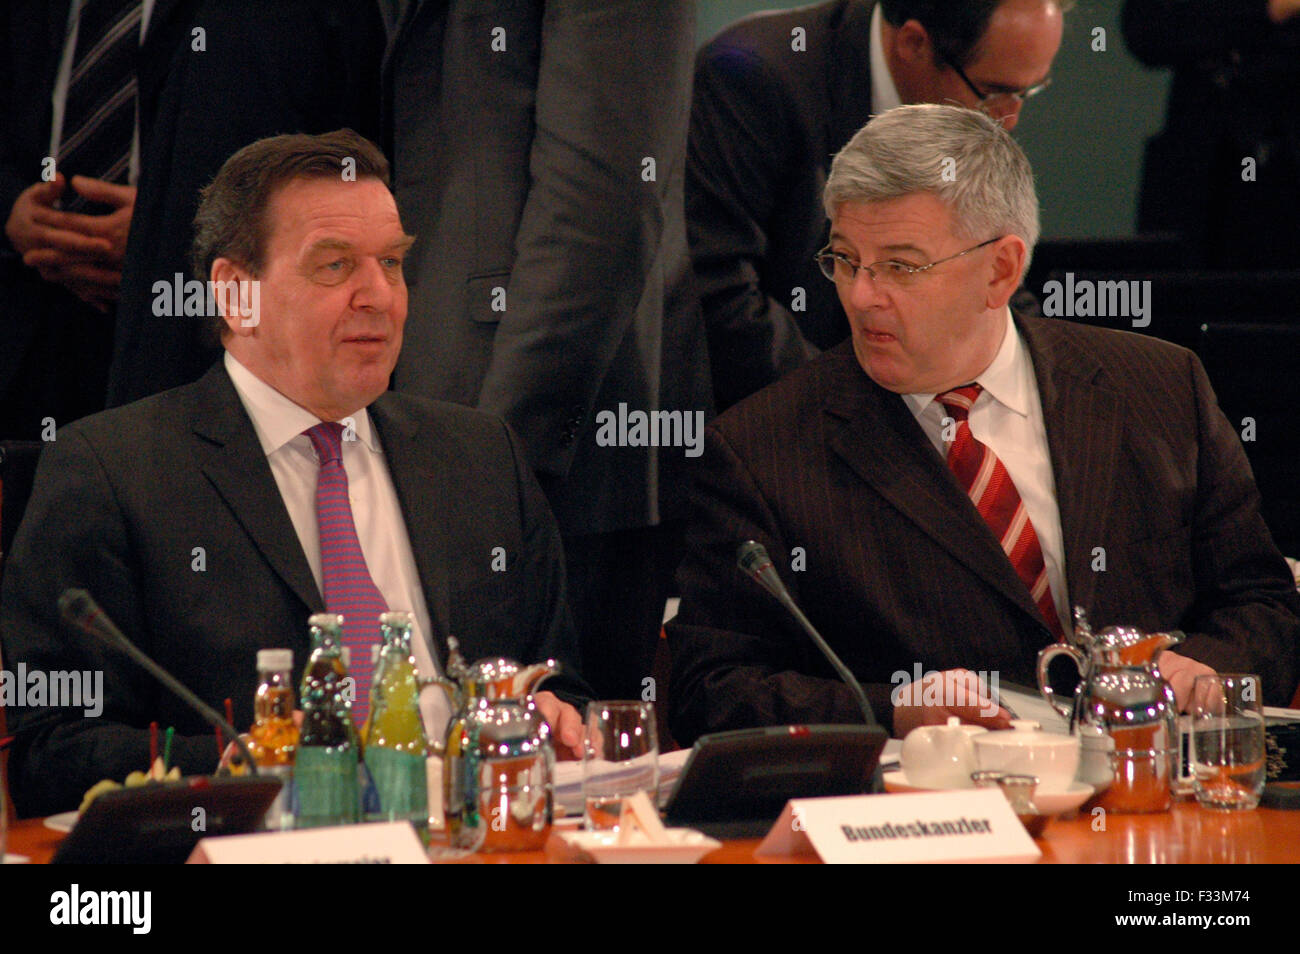 Bundeskanzler Gerhard Schroeder, Aussenminister Joschka Fischer - Treffen des Bundeskanzlers und Mitgliedern der Bundesregierung Stock Photo